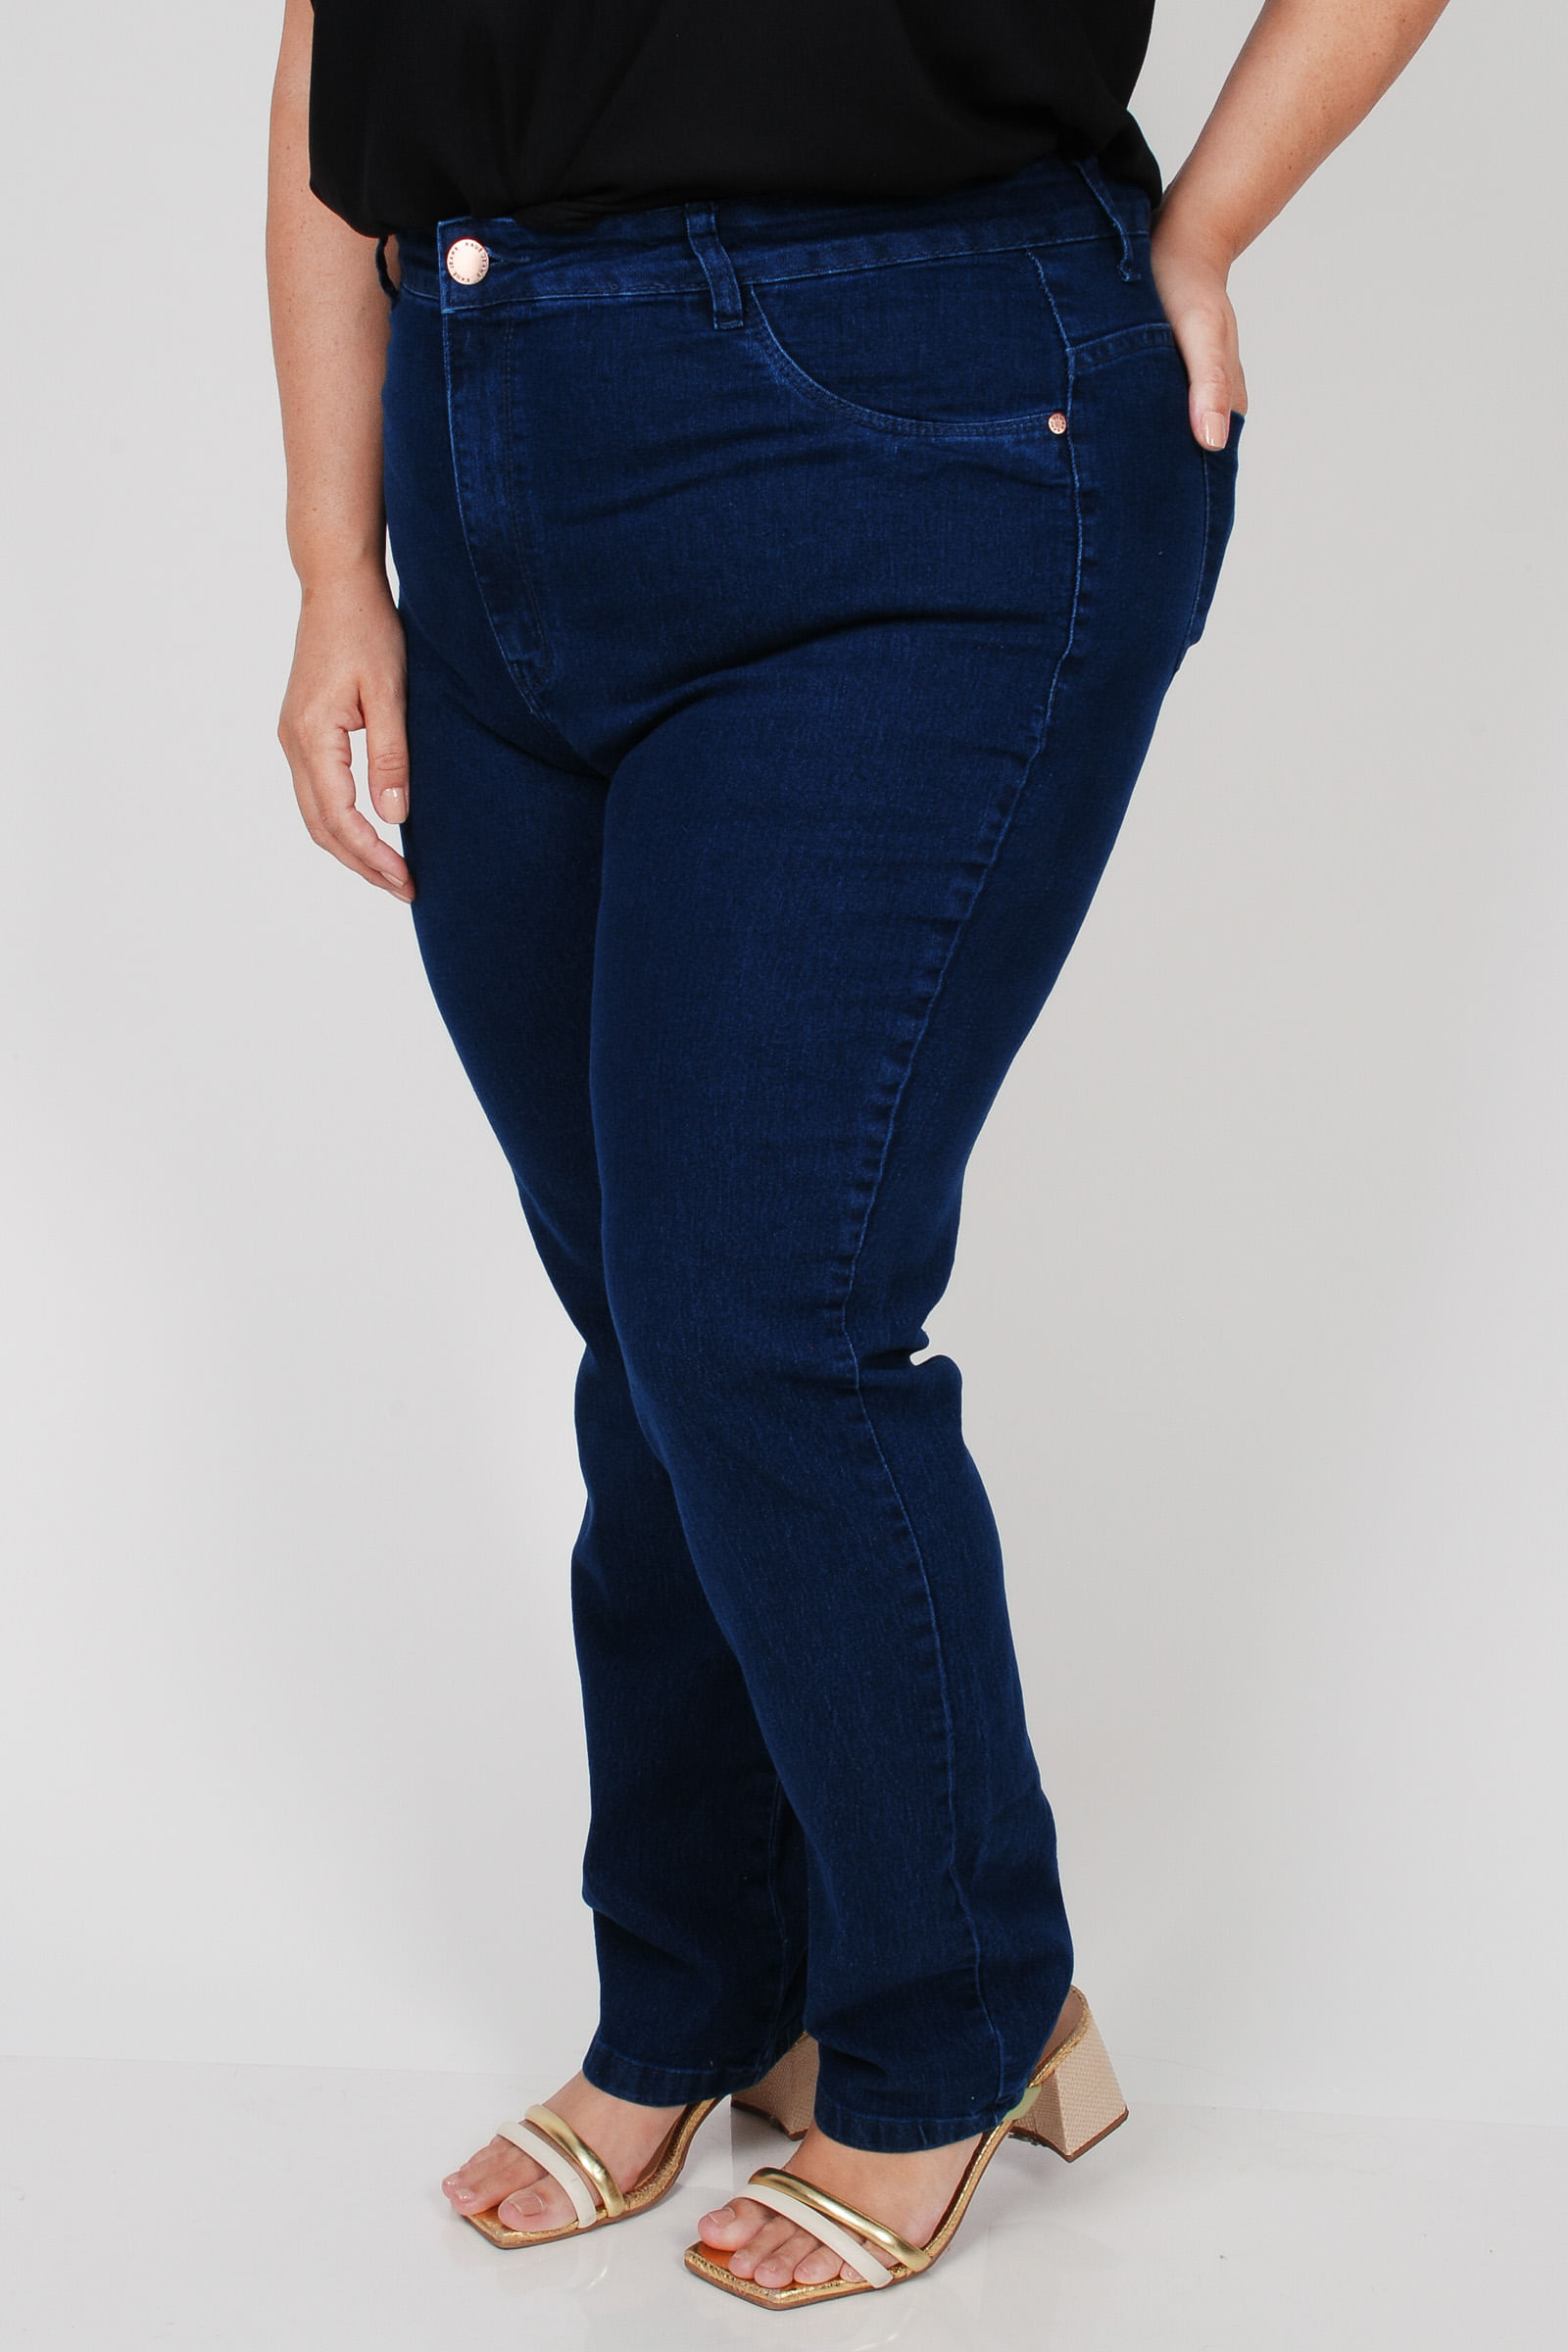 Calca-reta-jeans-feminina-plus-size_0102_1